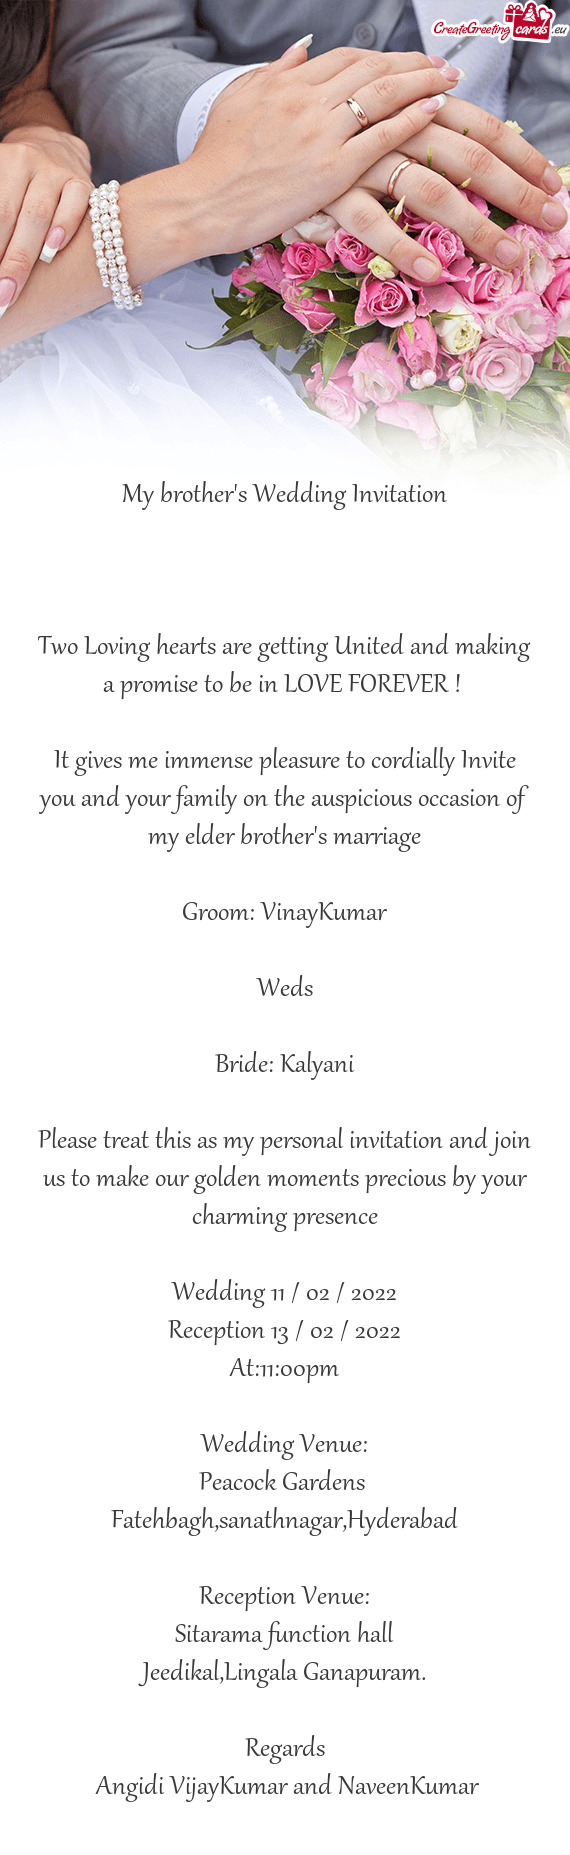 Bride: Kalyani